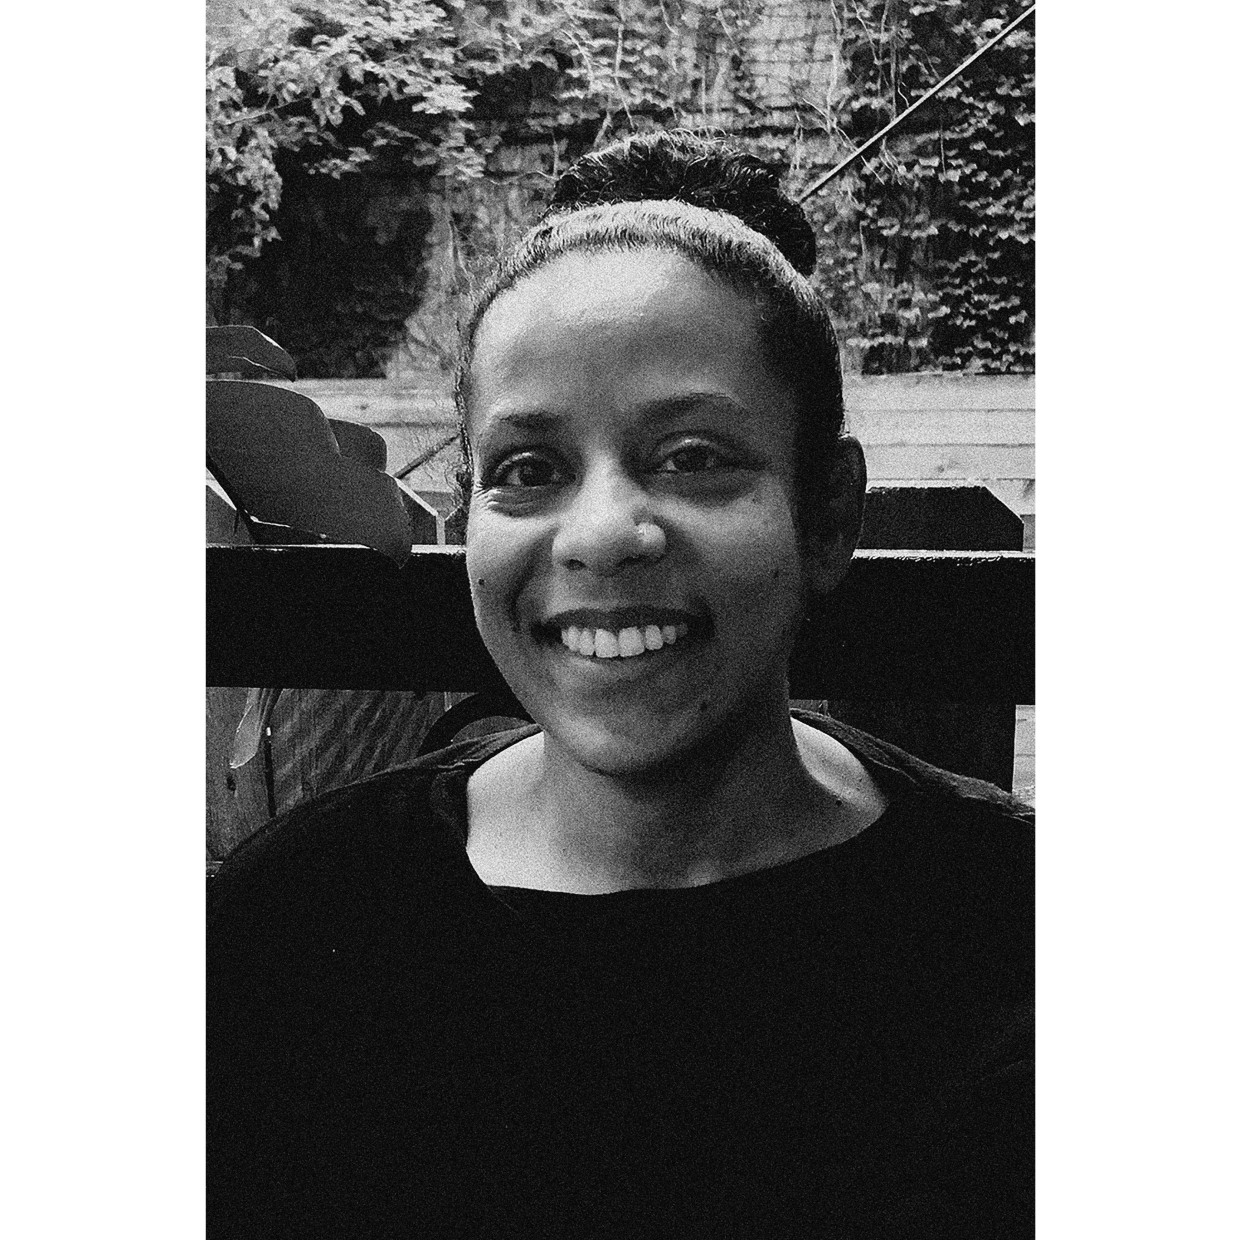 艺术家：萨曼莎·博科斯（Samantha Box） 1977年生于牙买加金斯敦。 在美国纽约工作、生活。 萨曼莎·博科斯拥有美国国际摄影中心巴德学院的高级摄影艺术硕士学位，以及该中心颁发的新闻纪实摄影证书。 她的作品曾在休斯顿摄影中心、德保罗艺术博物馆、莱斯利·洛曼艺术博物馆、开放社会基金会以及美国国际摄影中心博物馆展出，并被休斯顿美术馆收藏。 博科斯曾是伍德斯托克摄影中心和 Light Work的驻地艺术家。 2023 年，她将在纽约州罗切斯特的视觉研究工坊驻地。博科斯曾于 2010 年和 2022 年两度获得纽约艺术基金会/纽约州艺术委员会摄影奖学金。